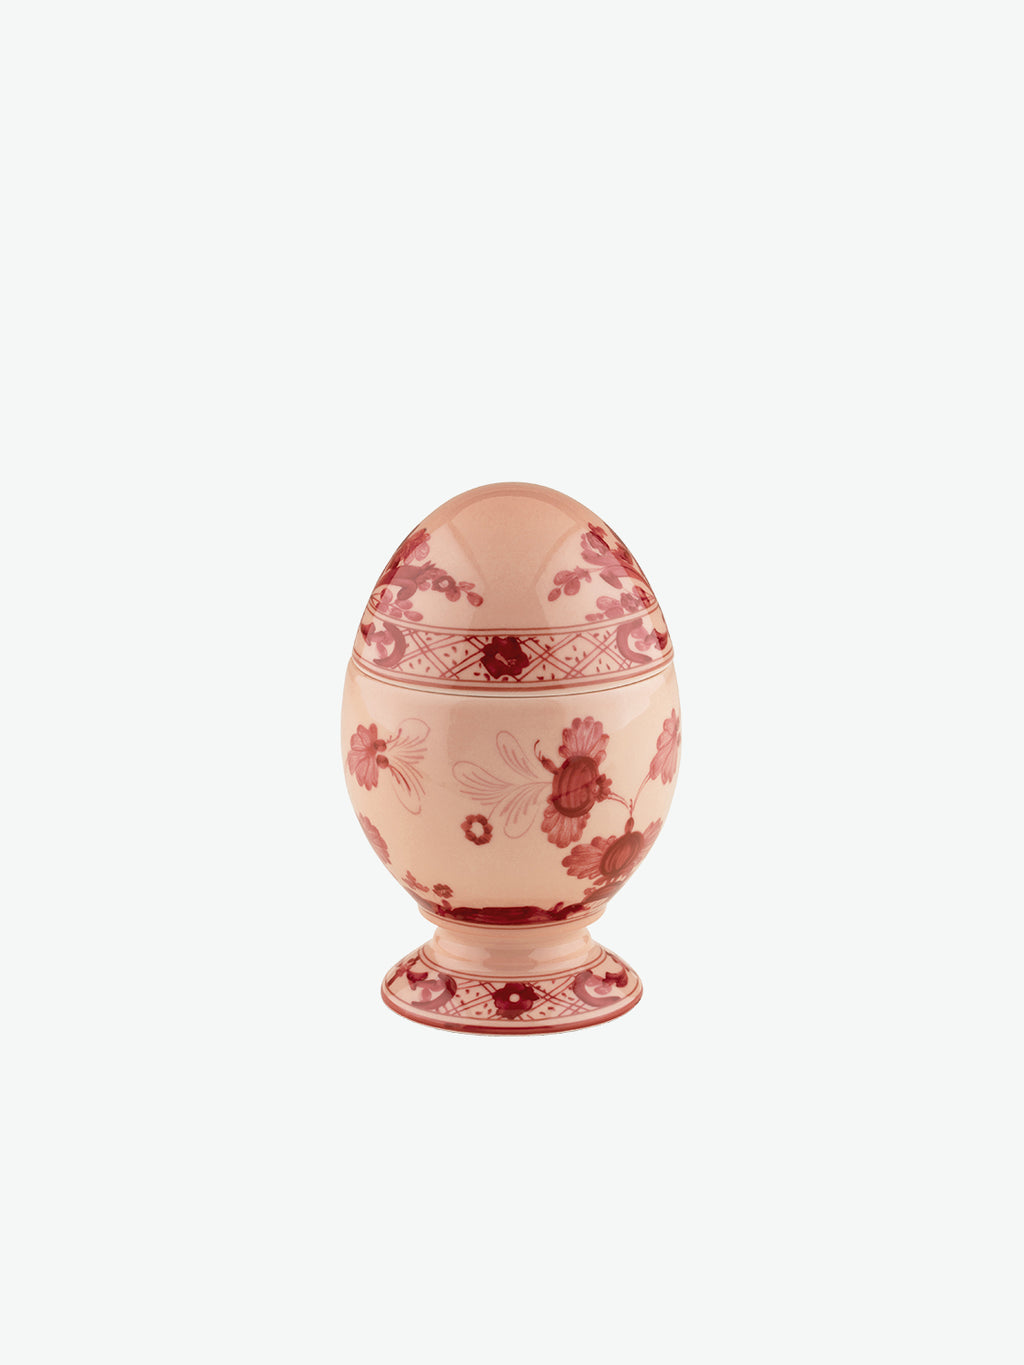 Richard Ginori Small Egg Oriente Italiano Vermiglio